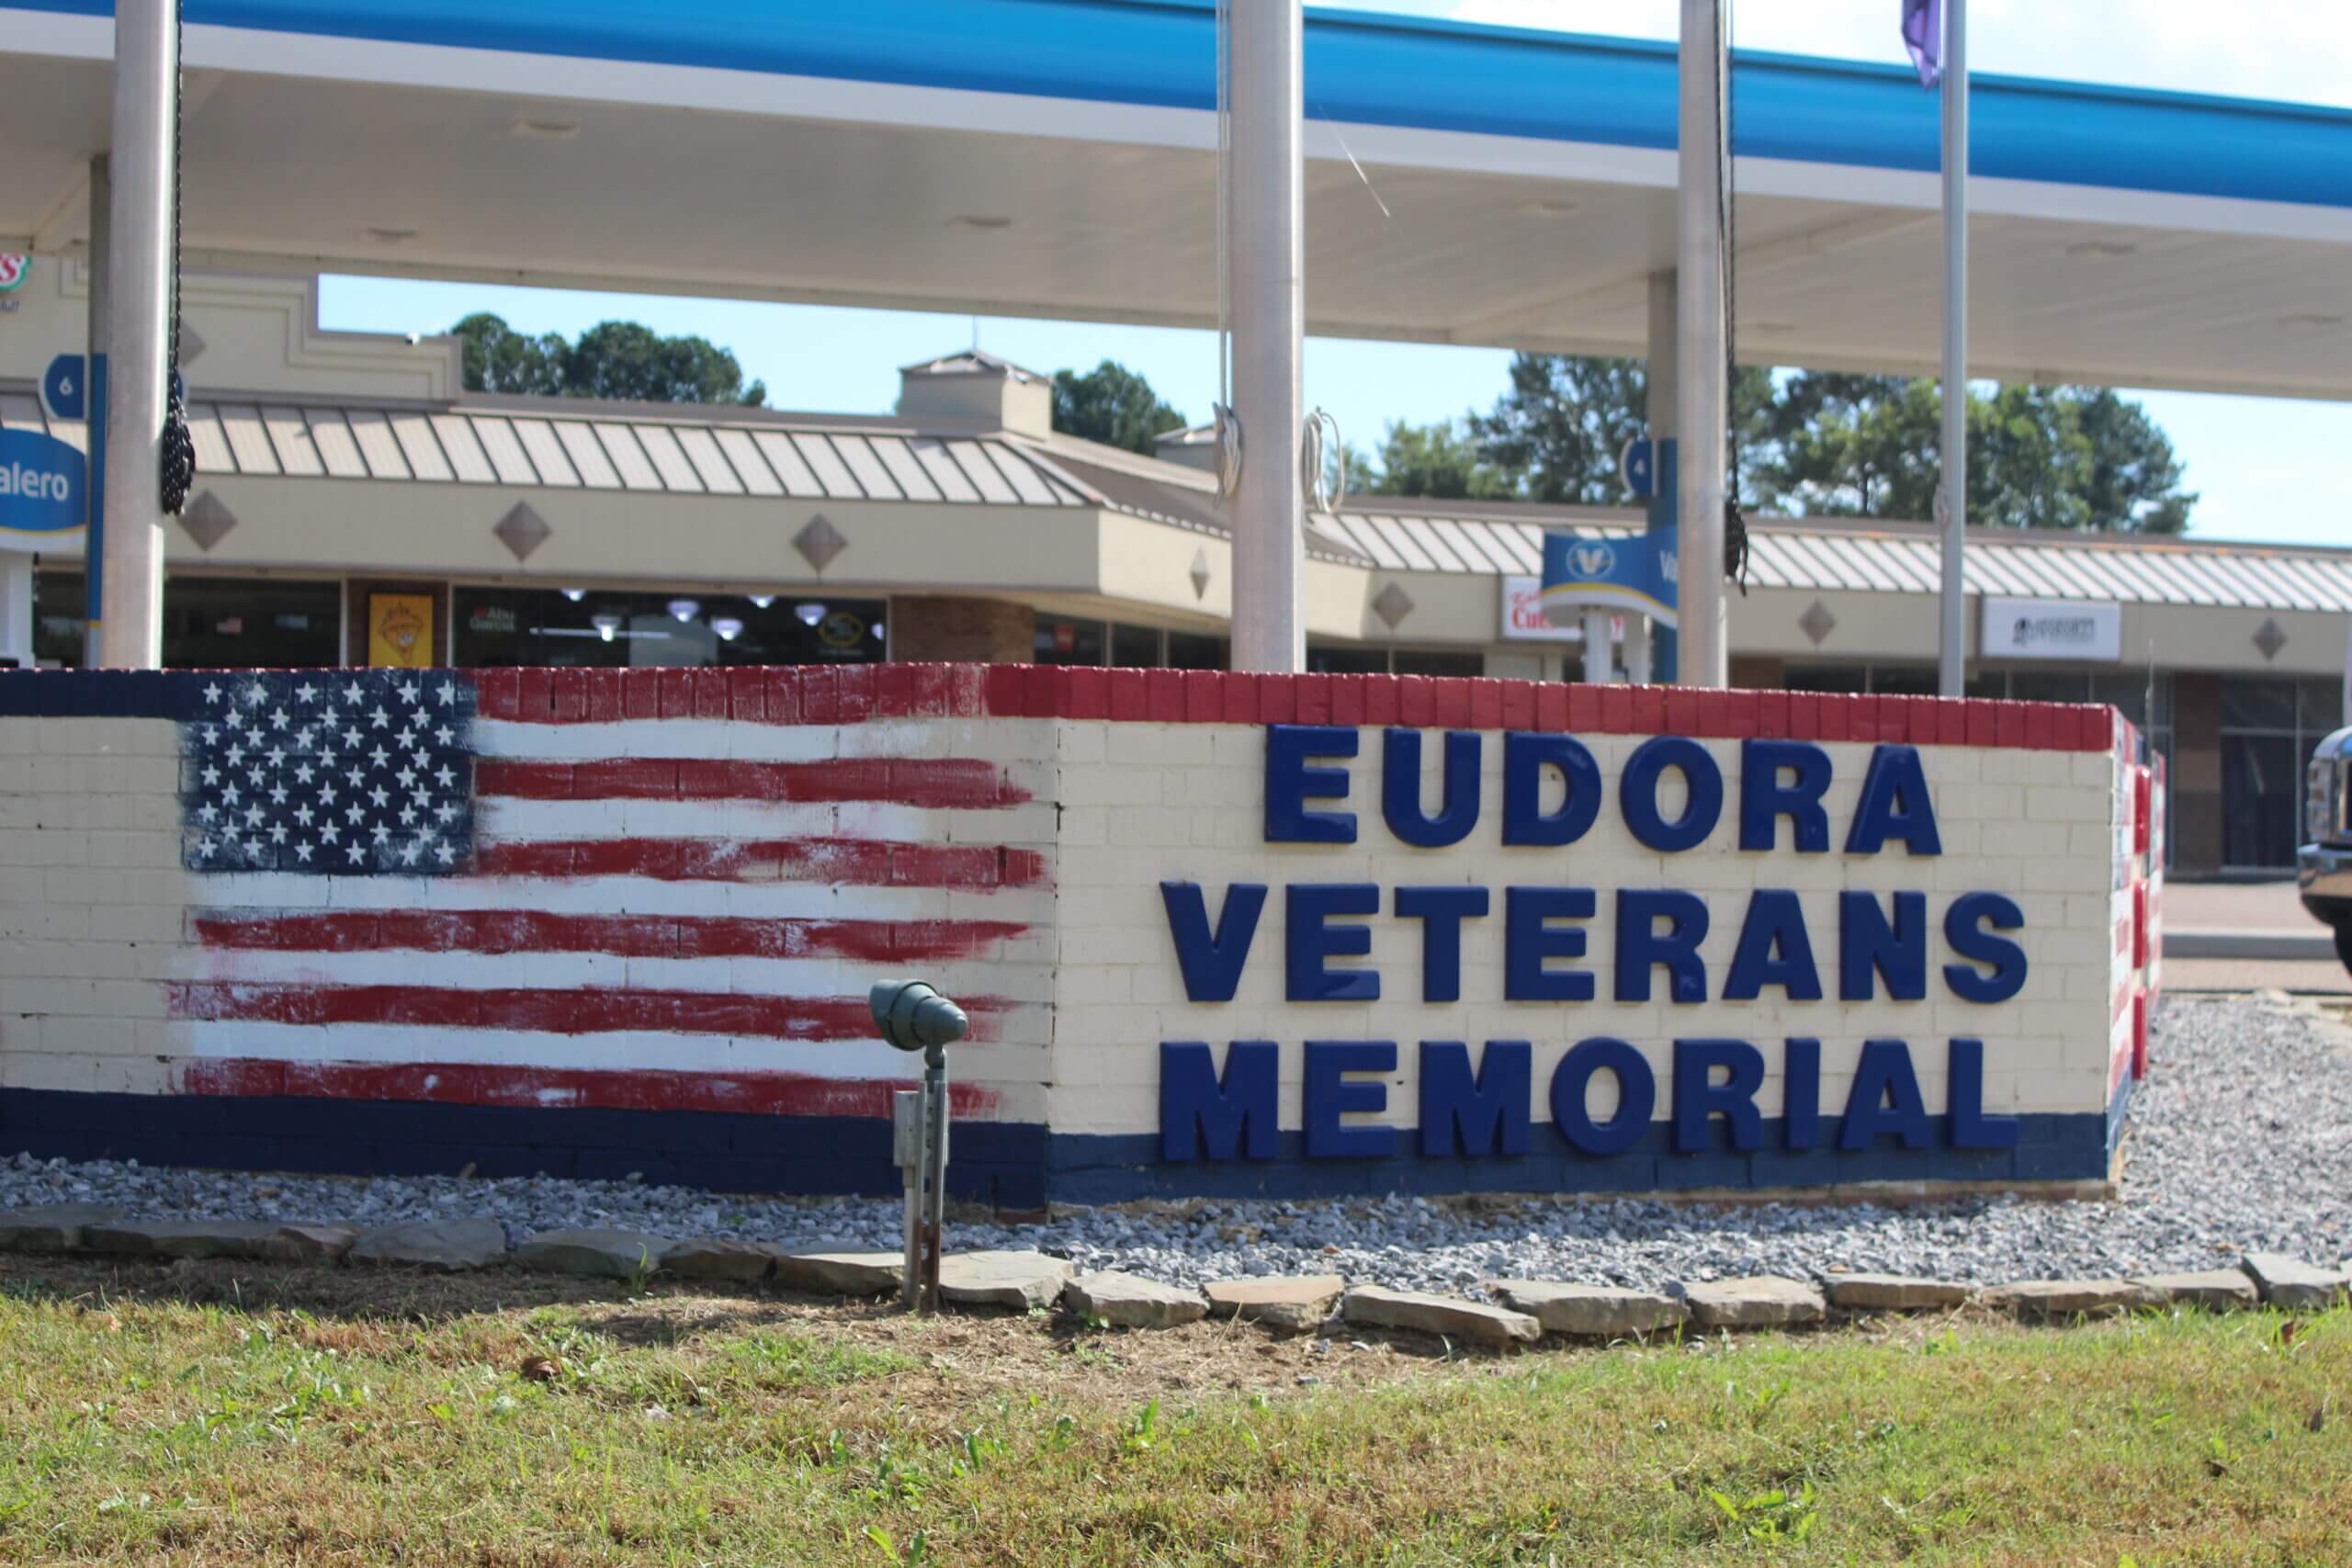 Eudora Veterans Memorial dedicated